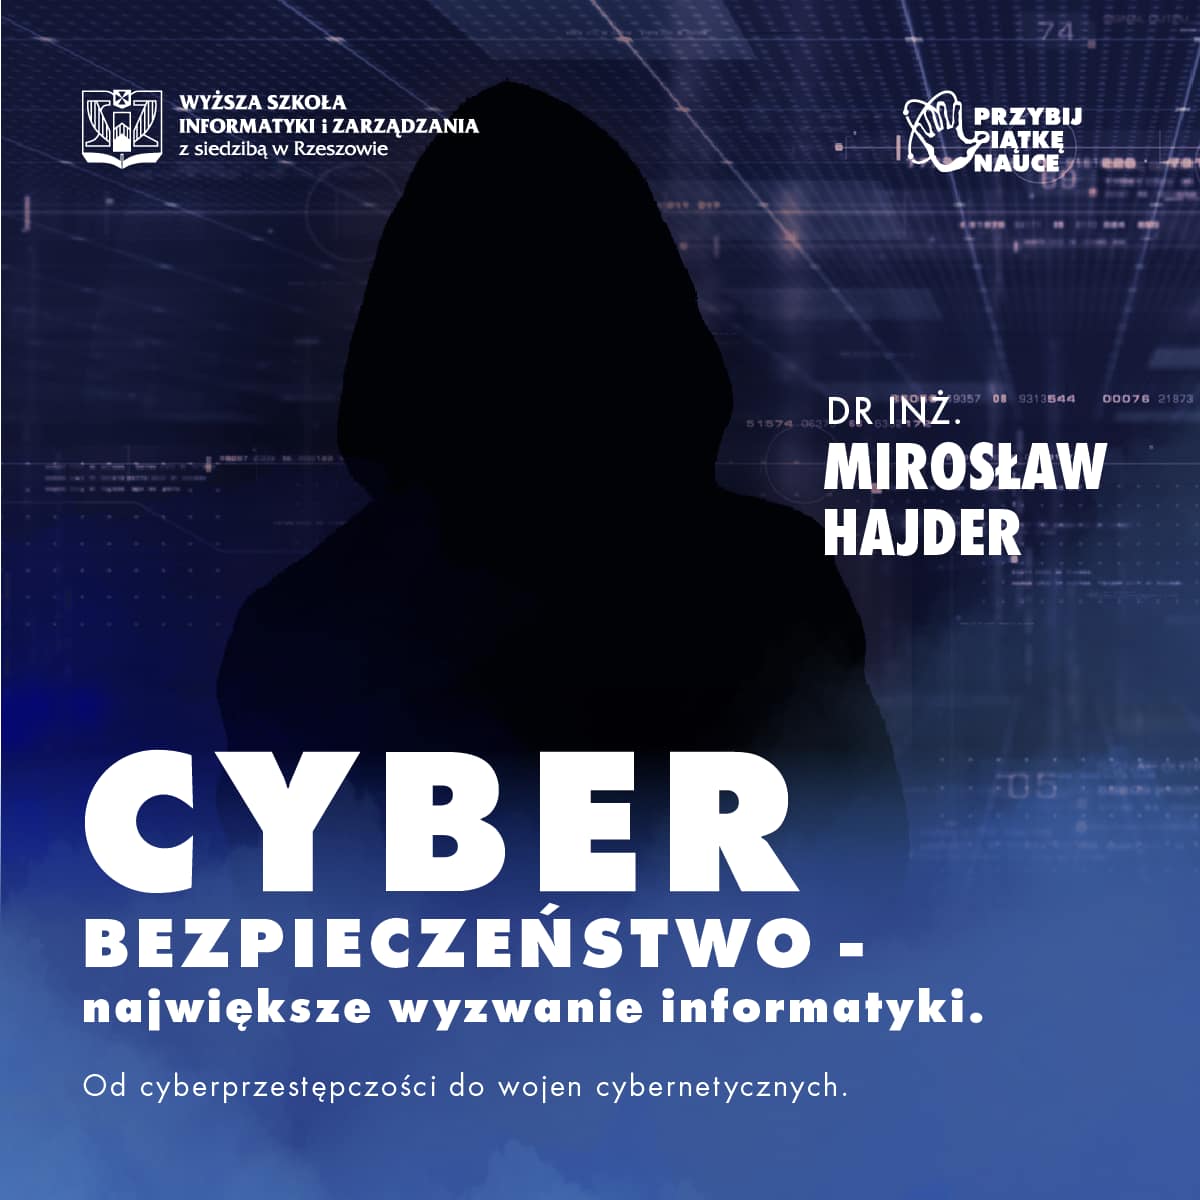 Cyberbespieczeństwo